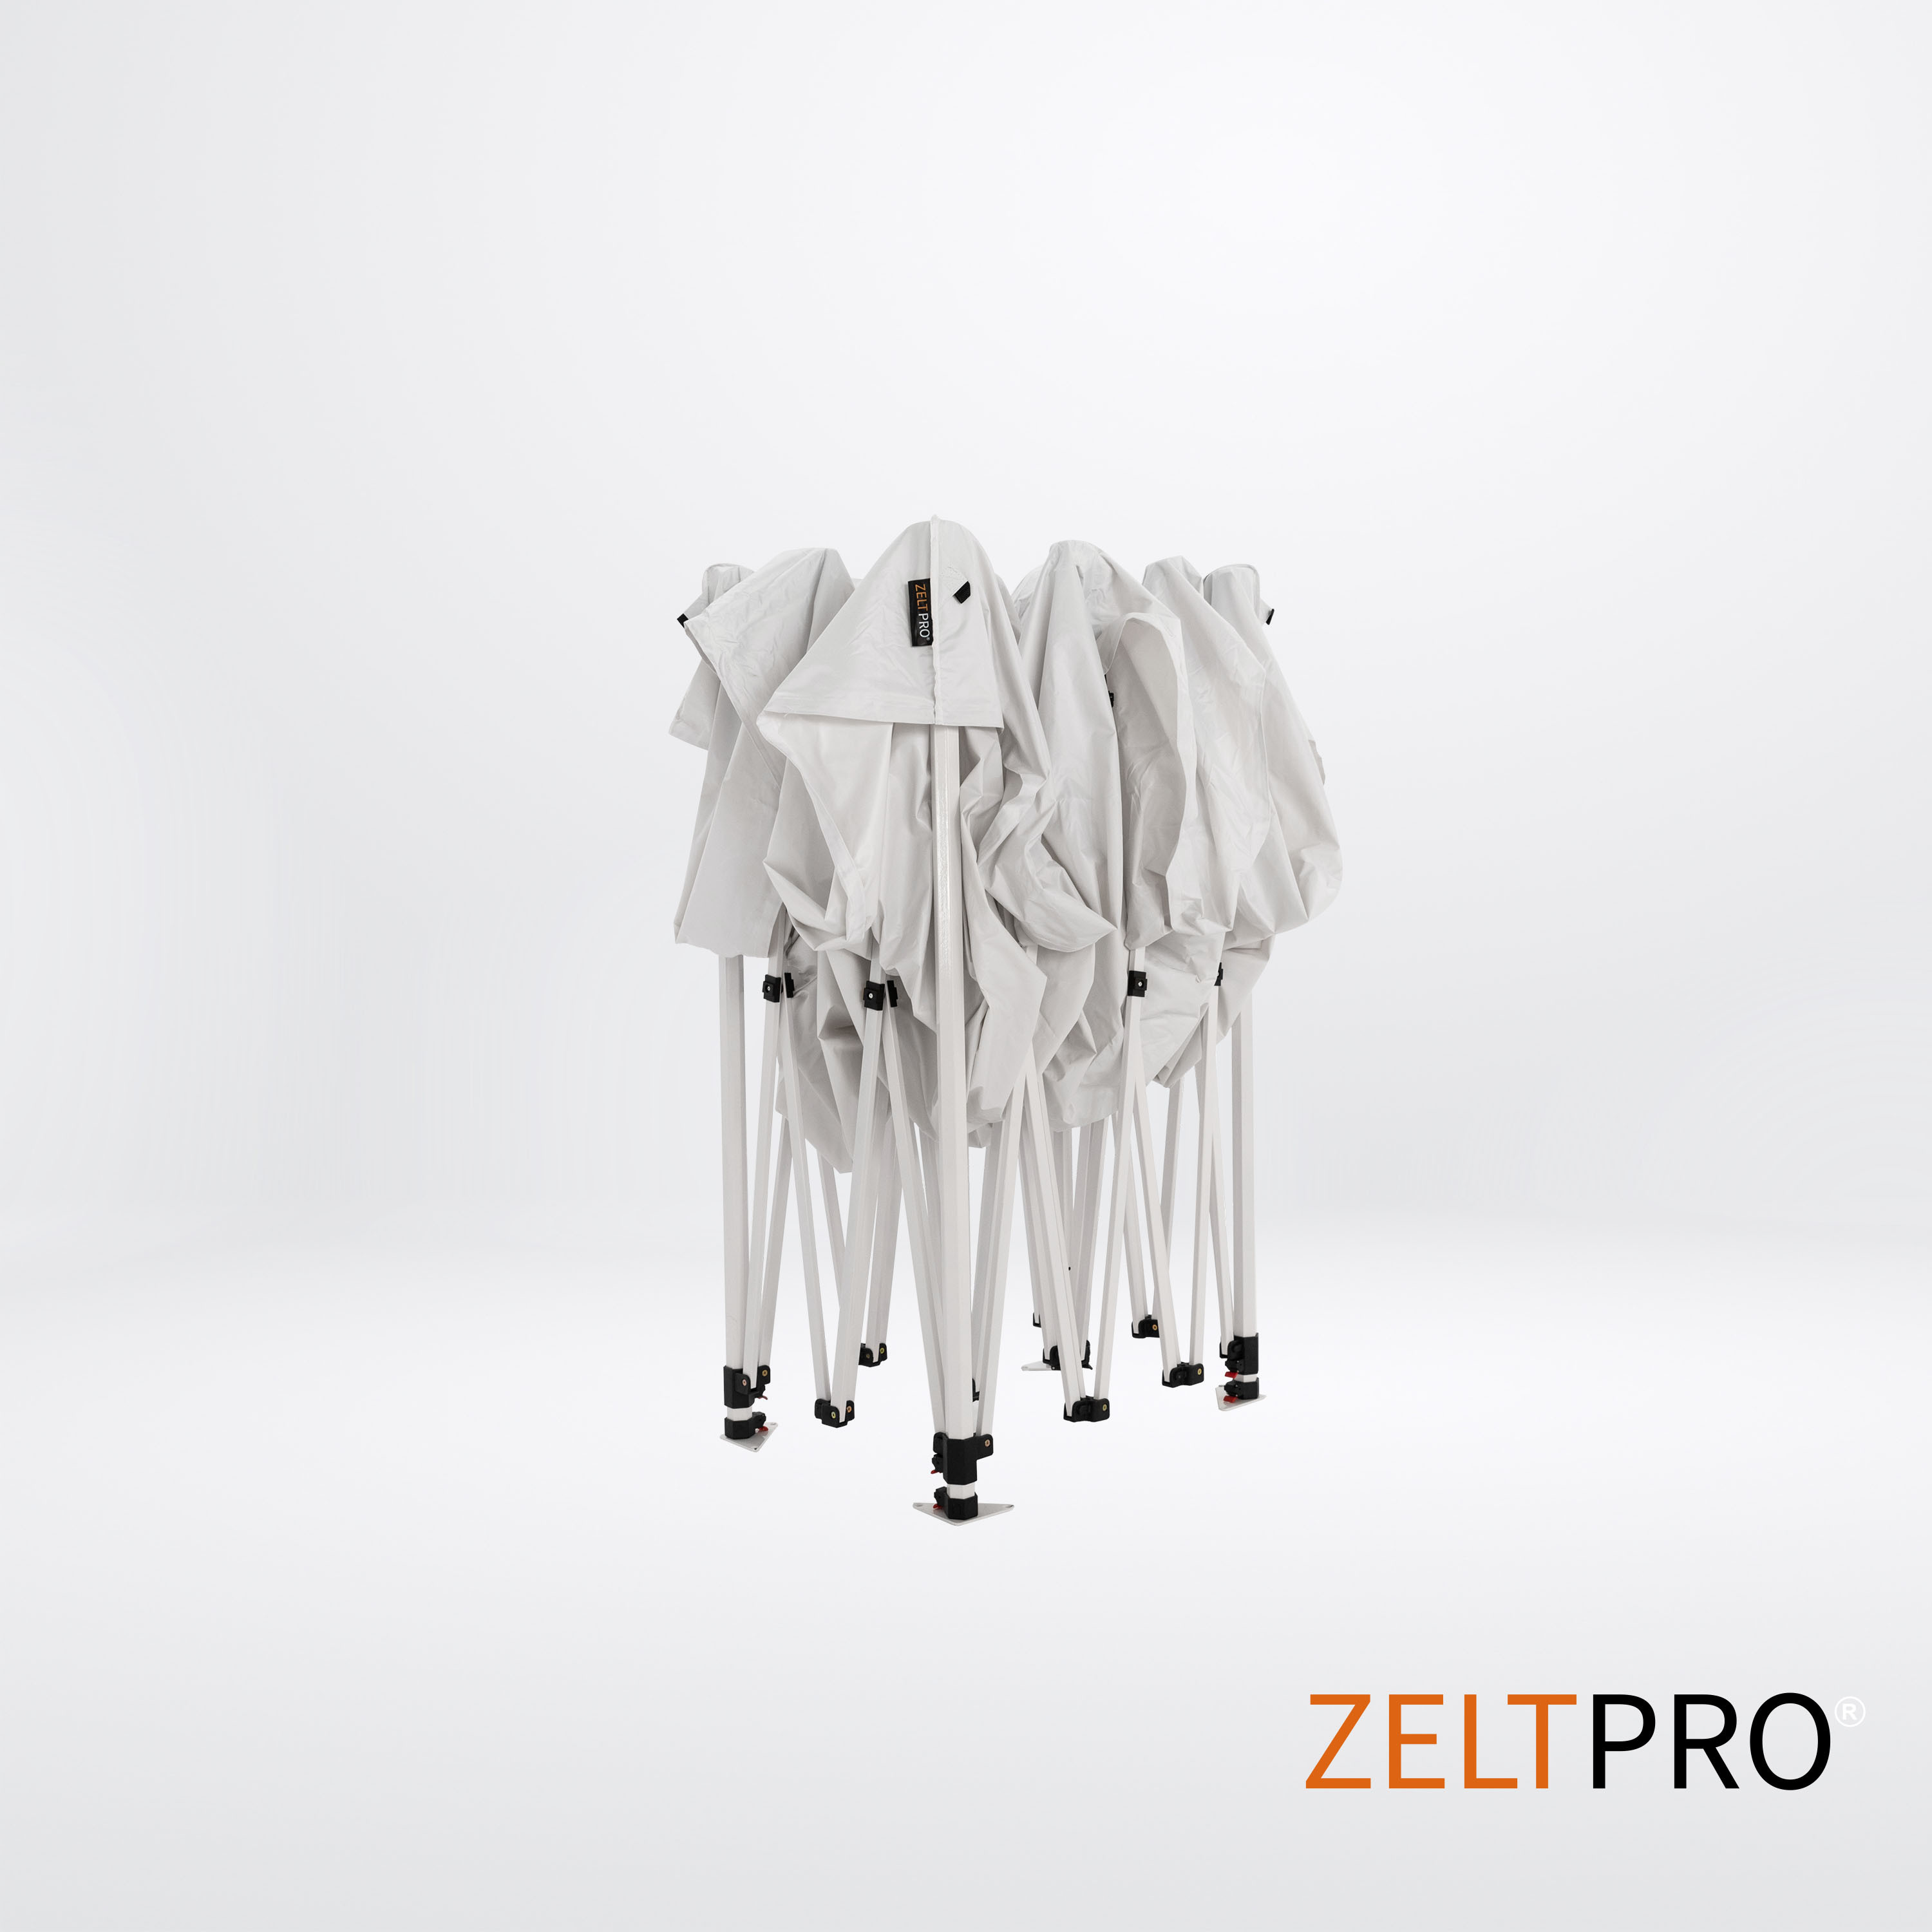 Pop-up telk 3x2 valge Zeltpro PROFRAME